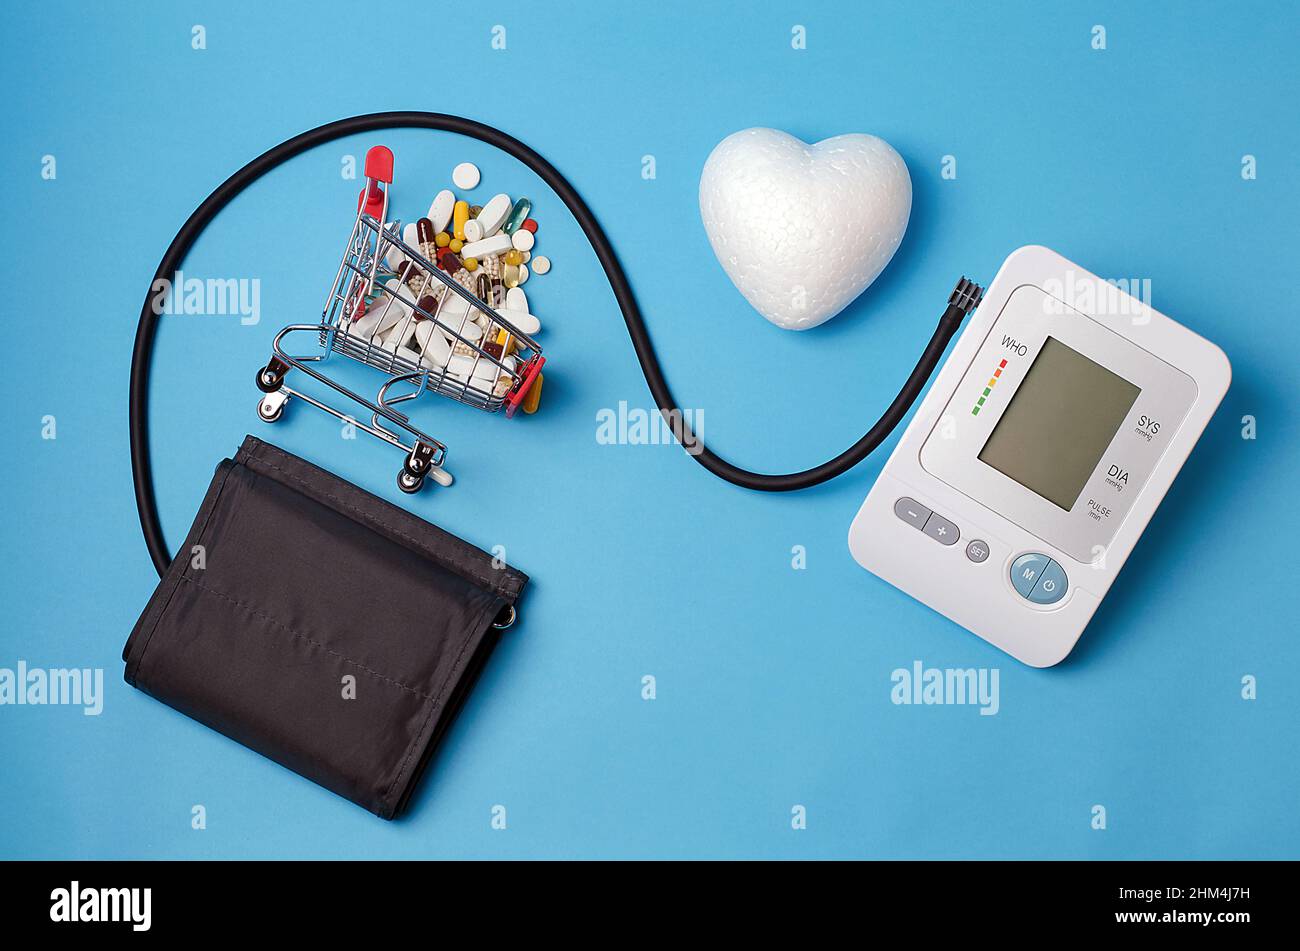 Contro uno sfondo blu luminoso, un monitor della pressione sanguigna, un carrello di supermercato riempito di pillole, un cuore bianco.concetto:farmaci medici per la gente suff Foto Stock